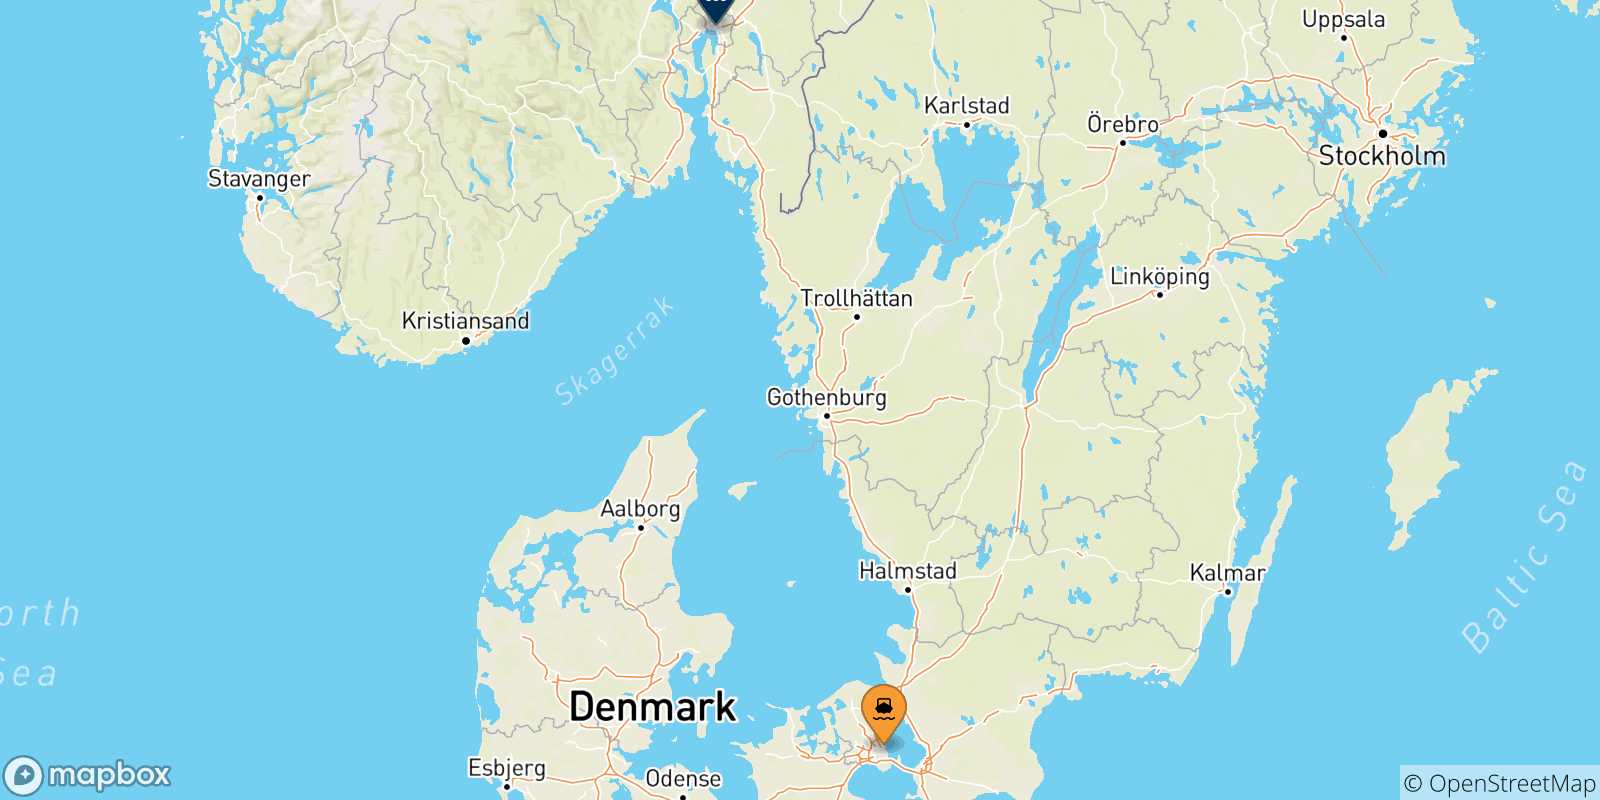 Mappa delle destinazioni raggiungibili dalla Danimarca